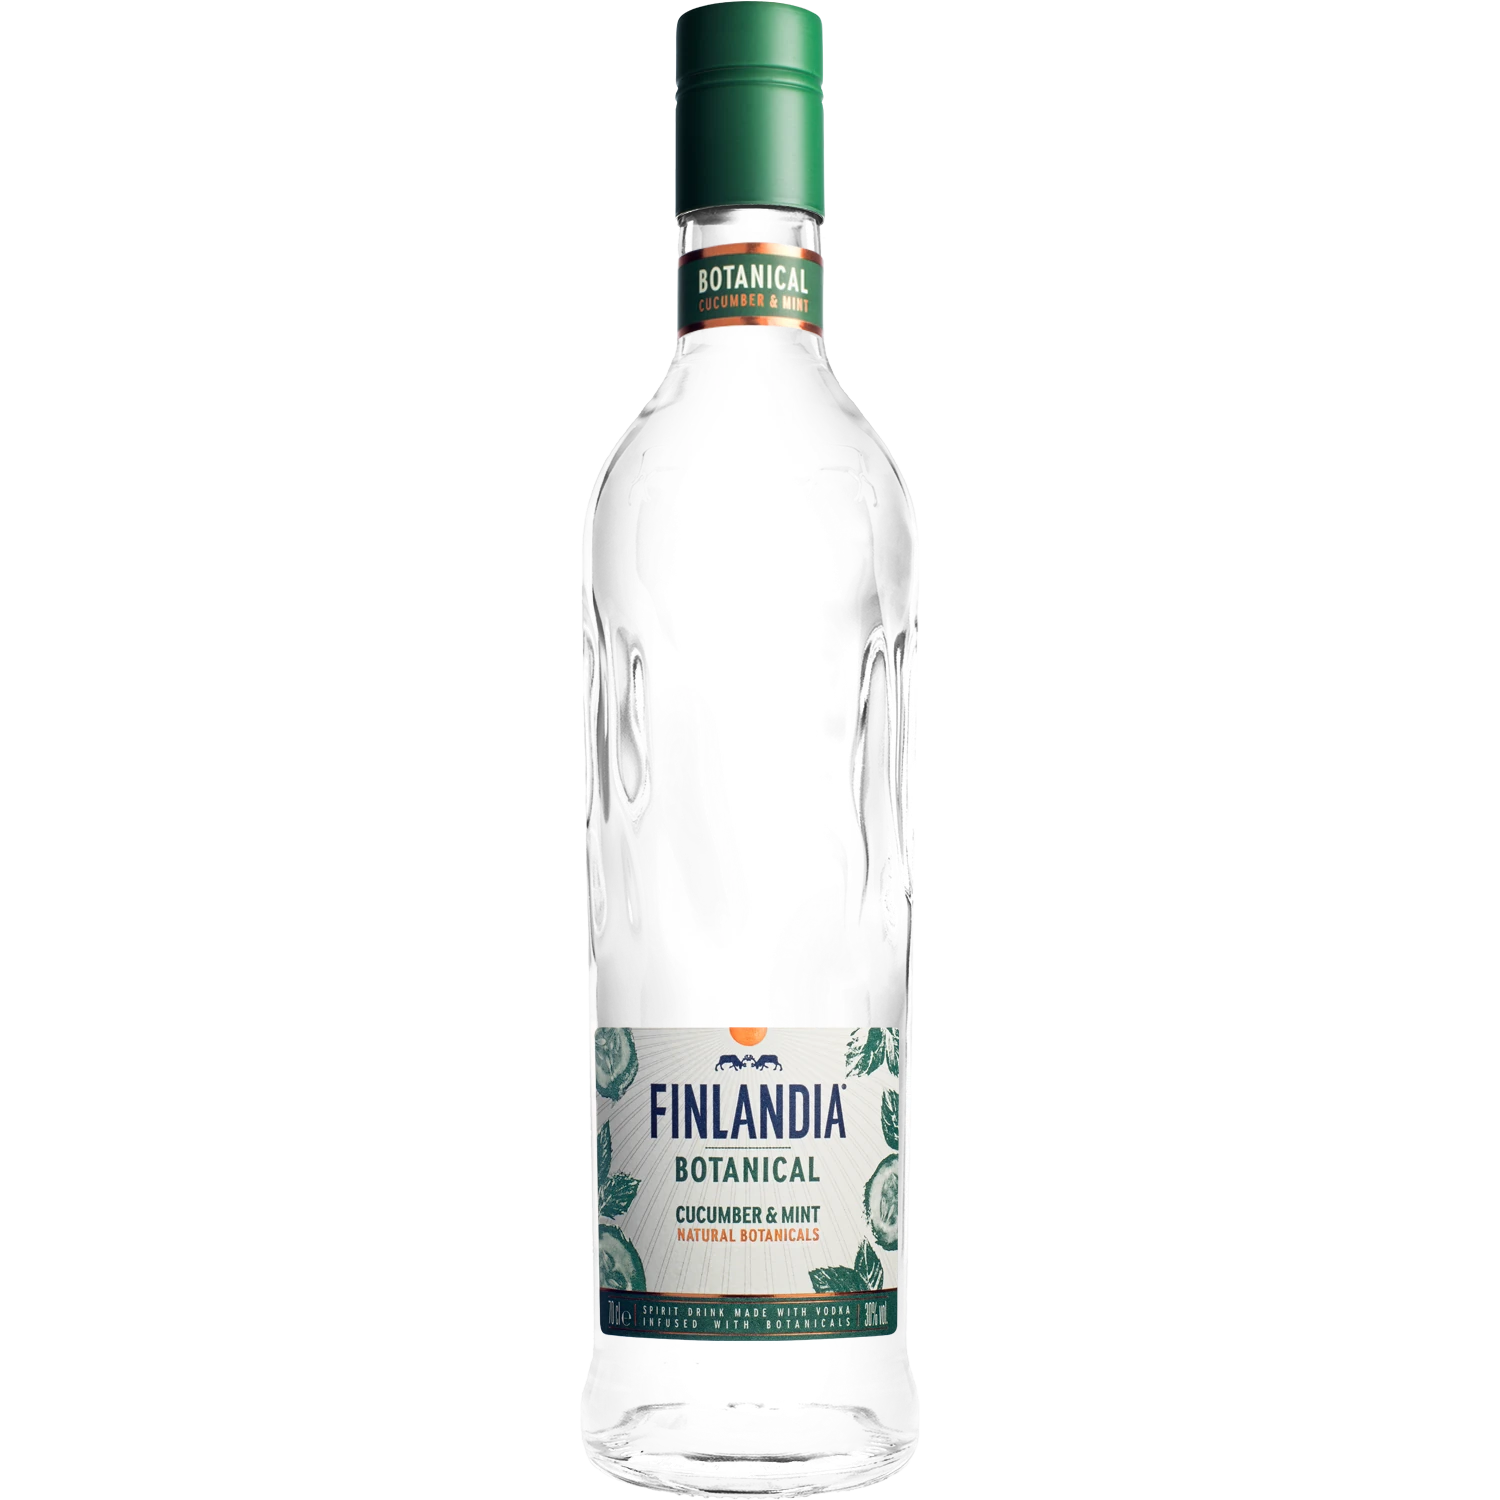 Wódka Finlandia botanical cucamber mint 30% 0.5L